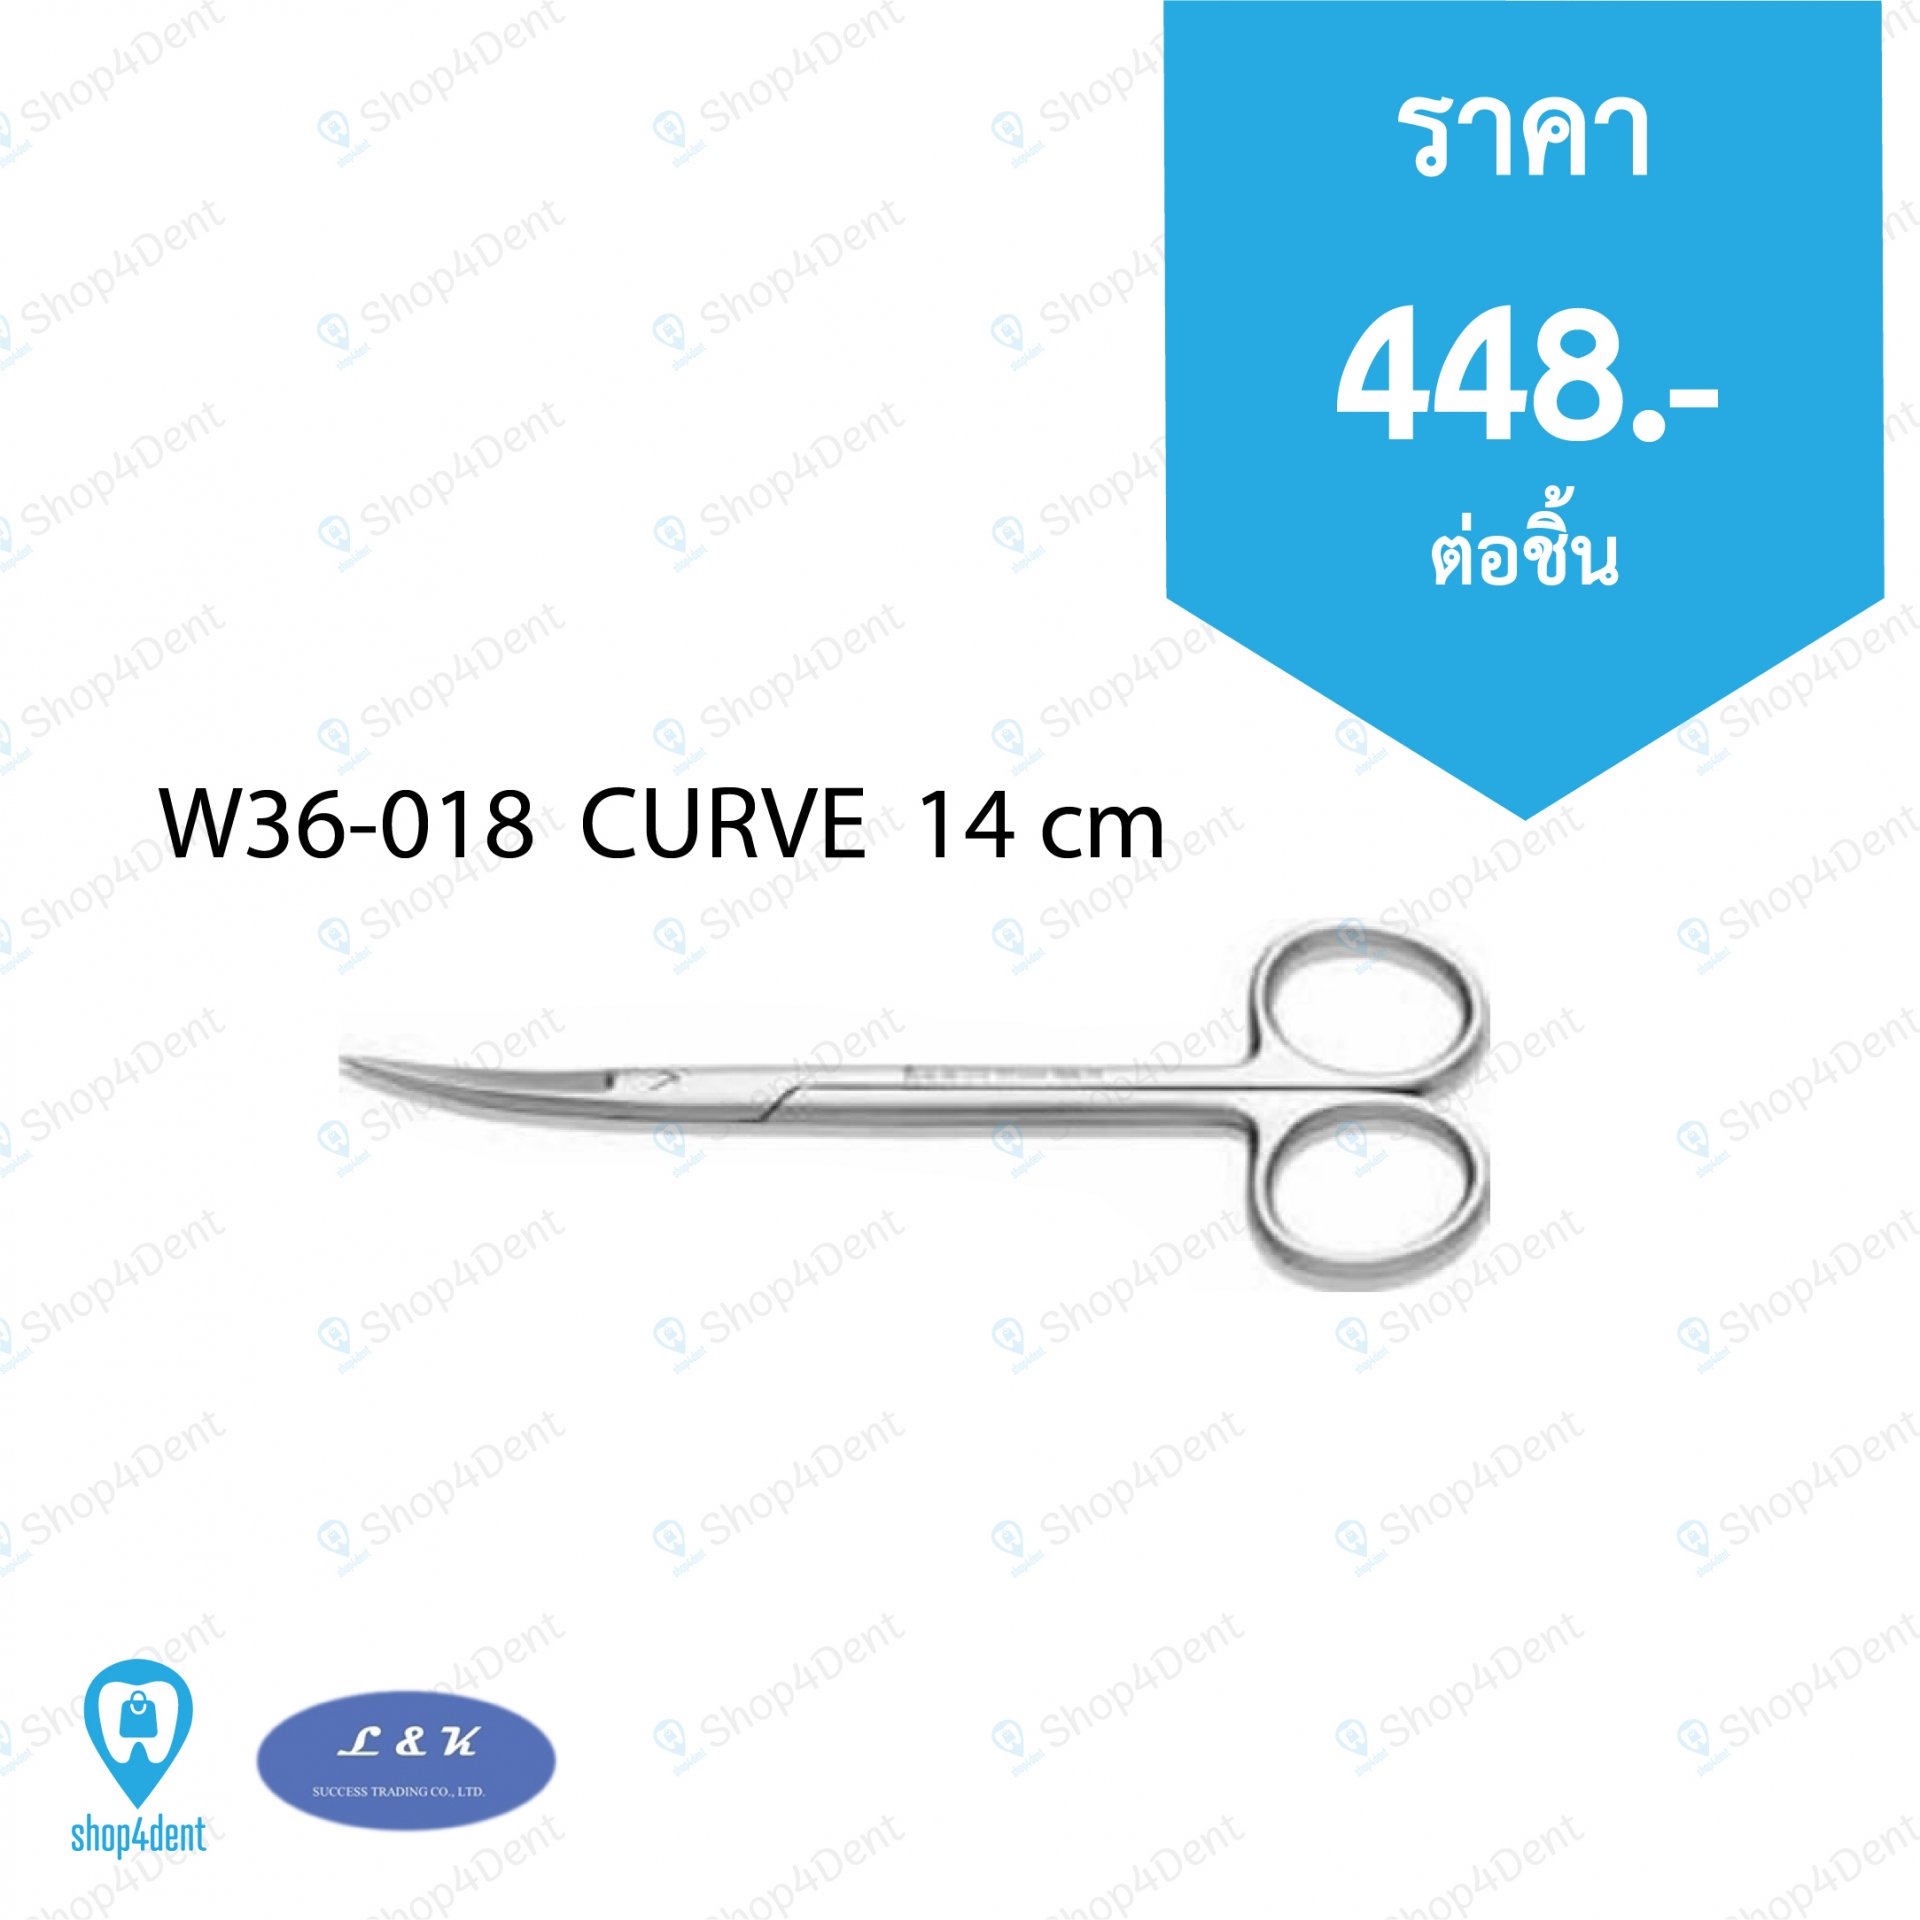 Dental Scissor_W36-018  CURVE  14 cm